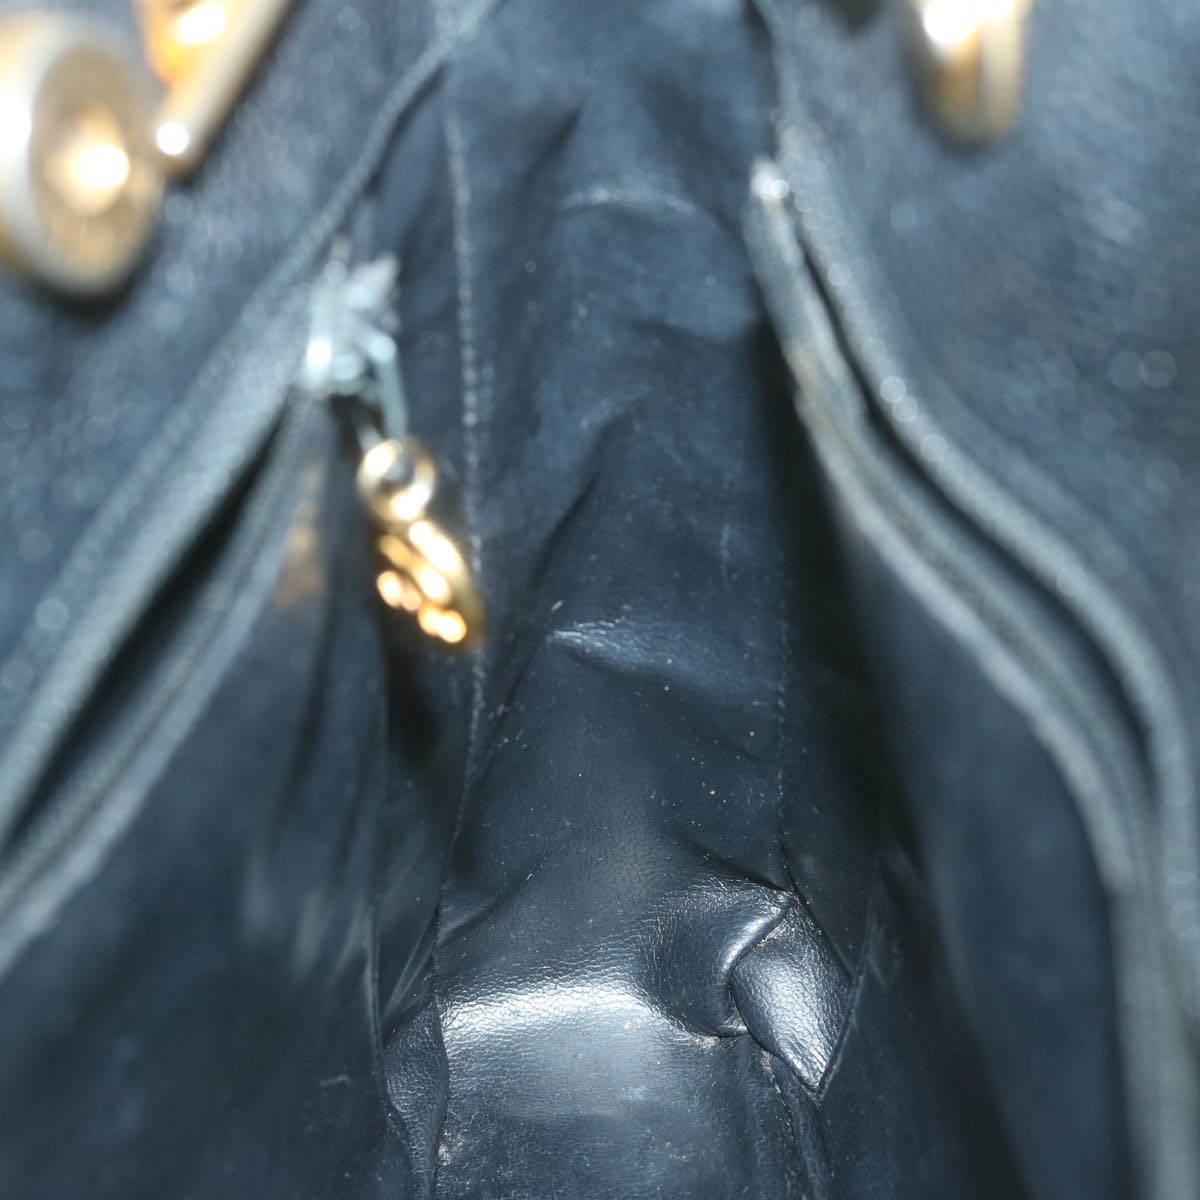 CHANEL Chain Turn Lock Shoulder Bag Caviar Skin Black CC Auth ar11351